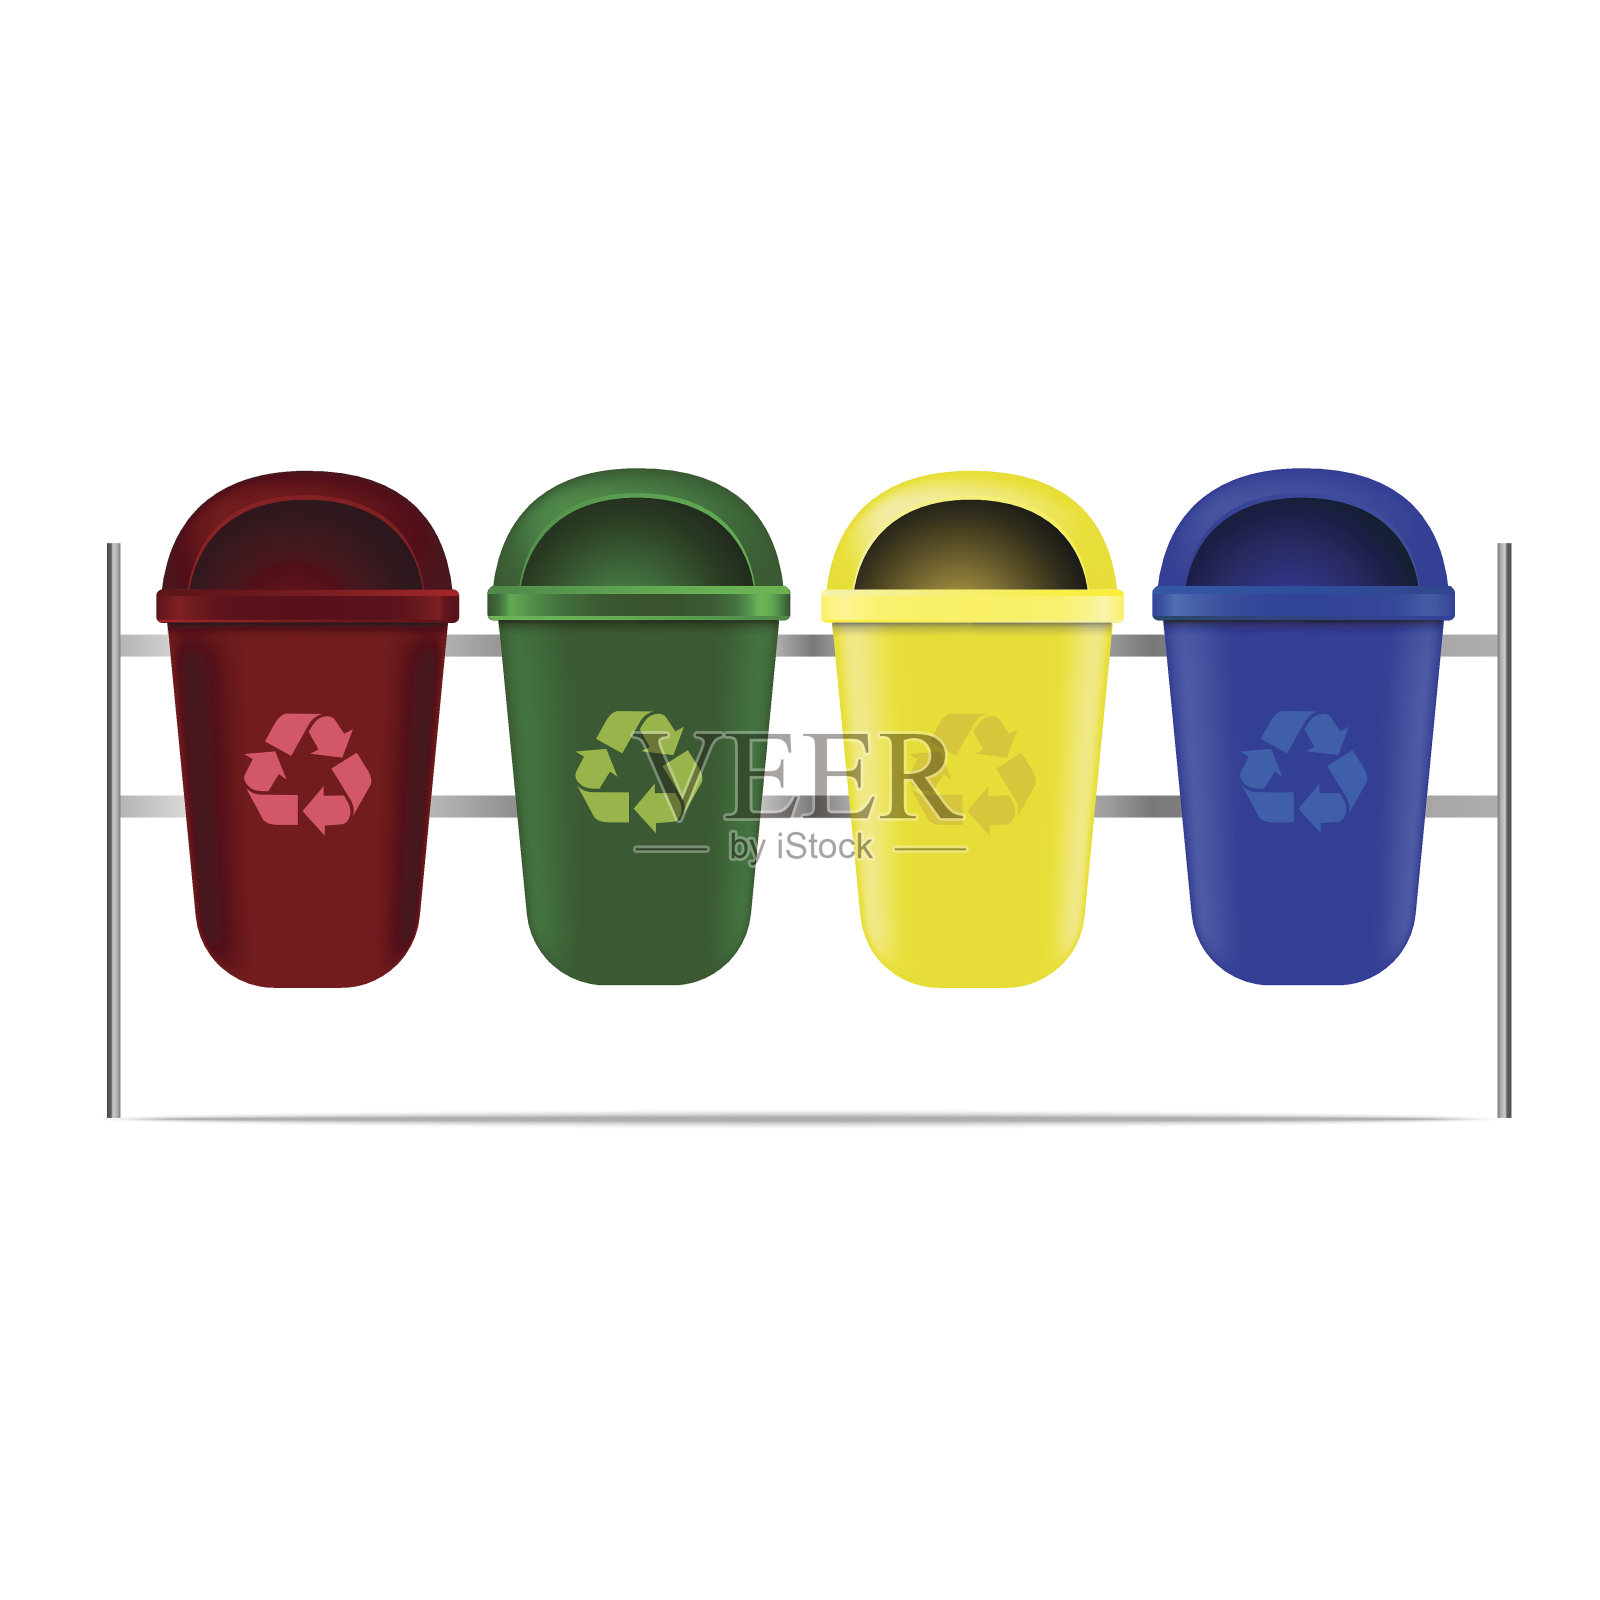 一套回收箱为垃圾或垃圾。矢量图标。设计元素图片